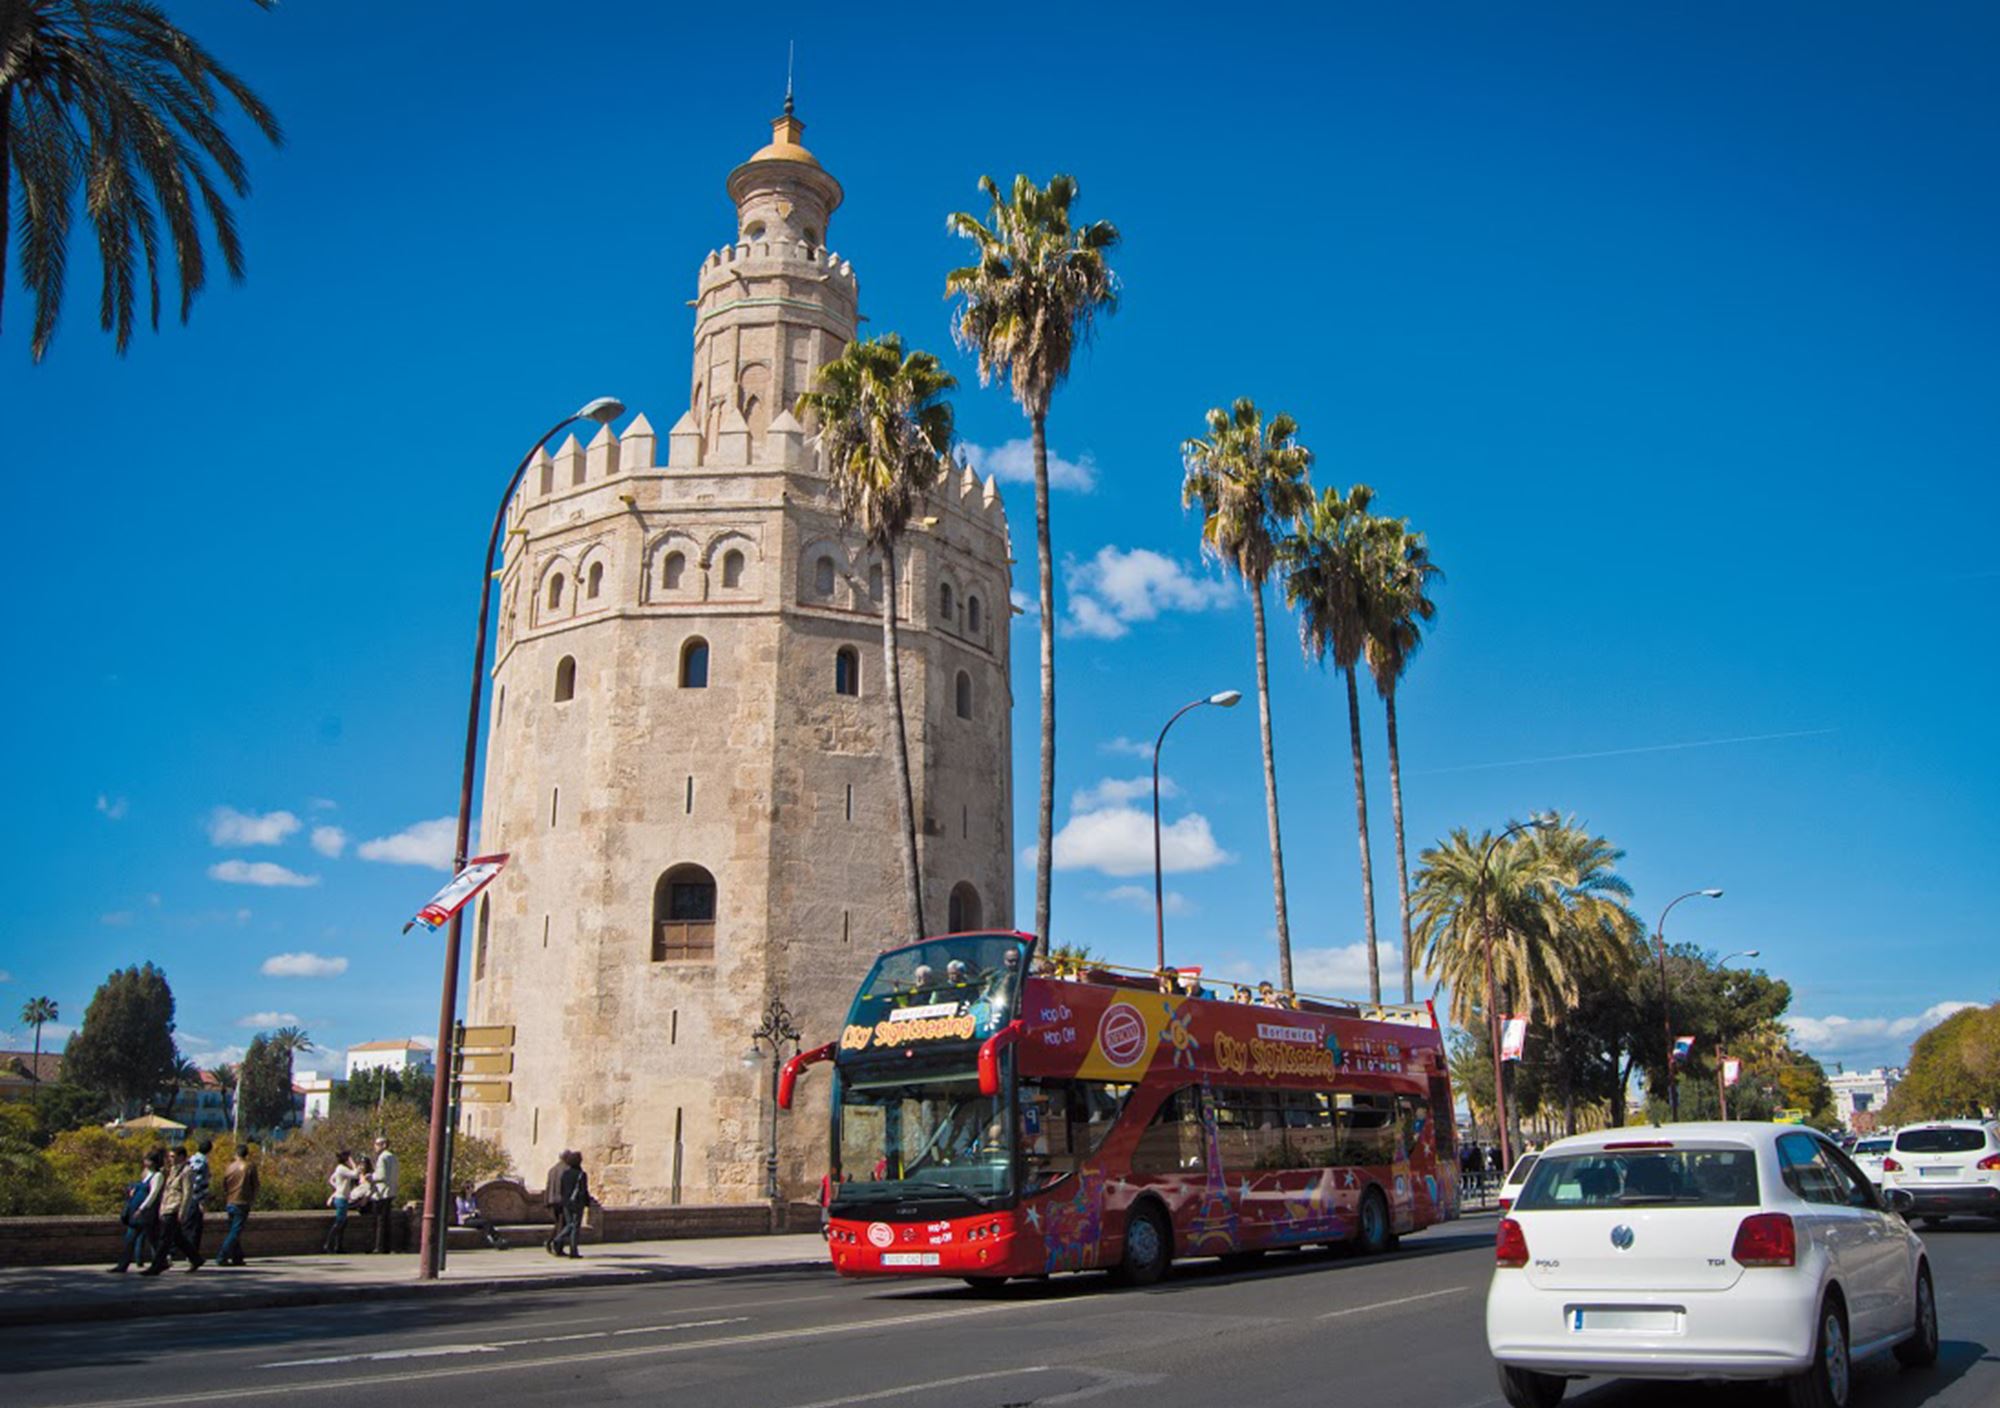 acheter réservations réserver visites guidées tours billets visiter Bus Touristique City Sightseeing Séville